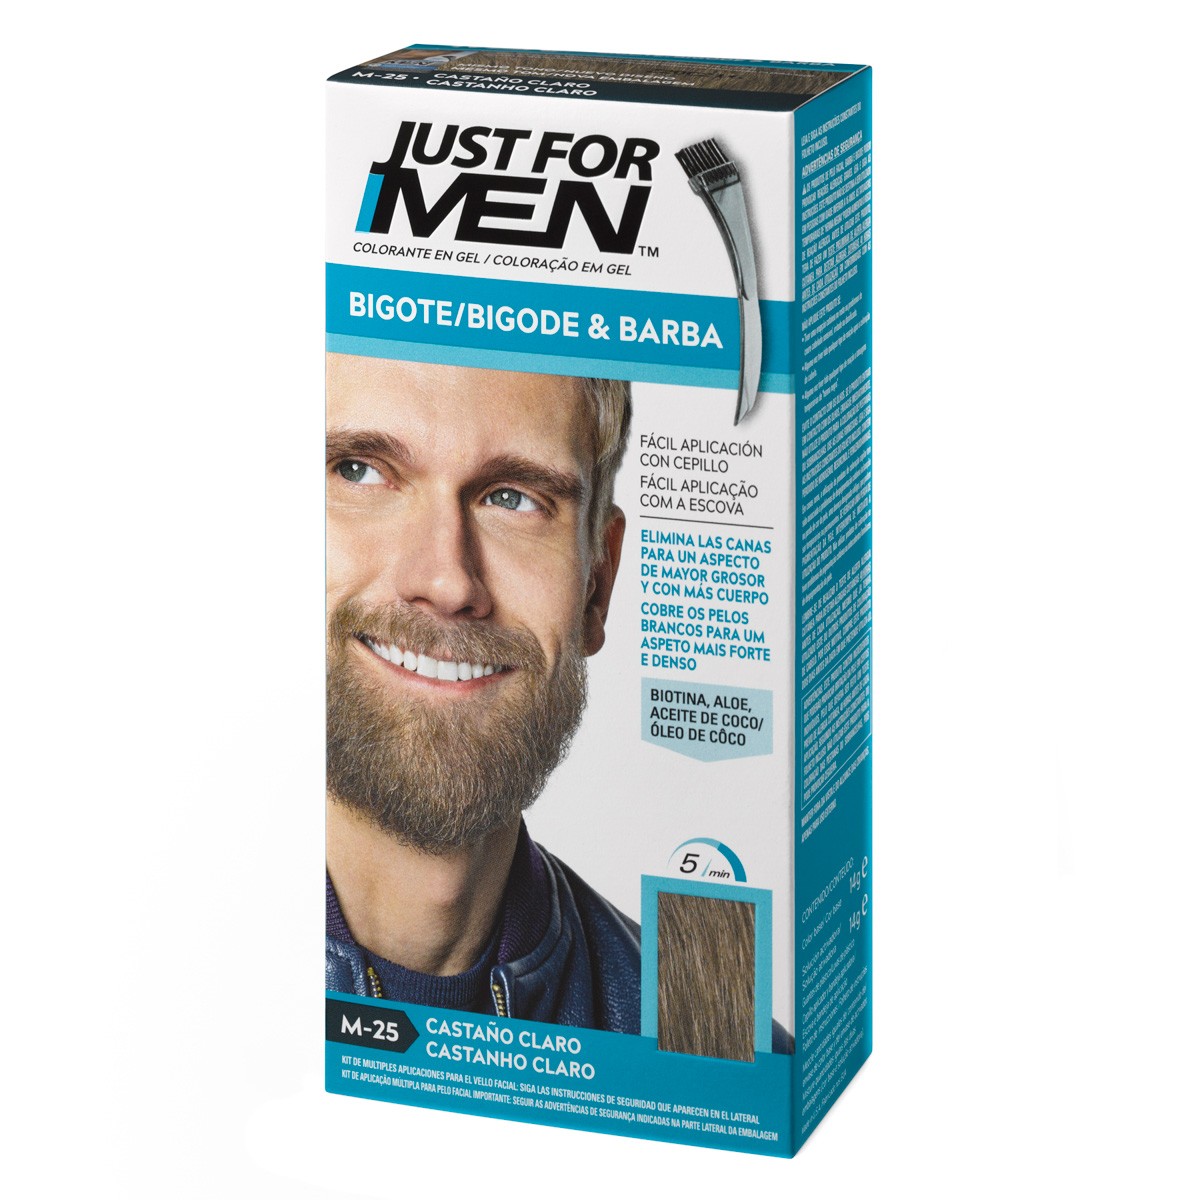 Just for men bigote y barba colorante en gel castaño claro